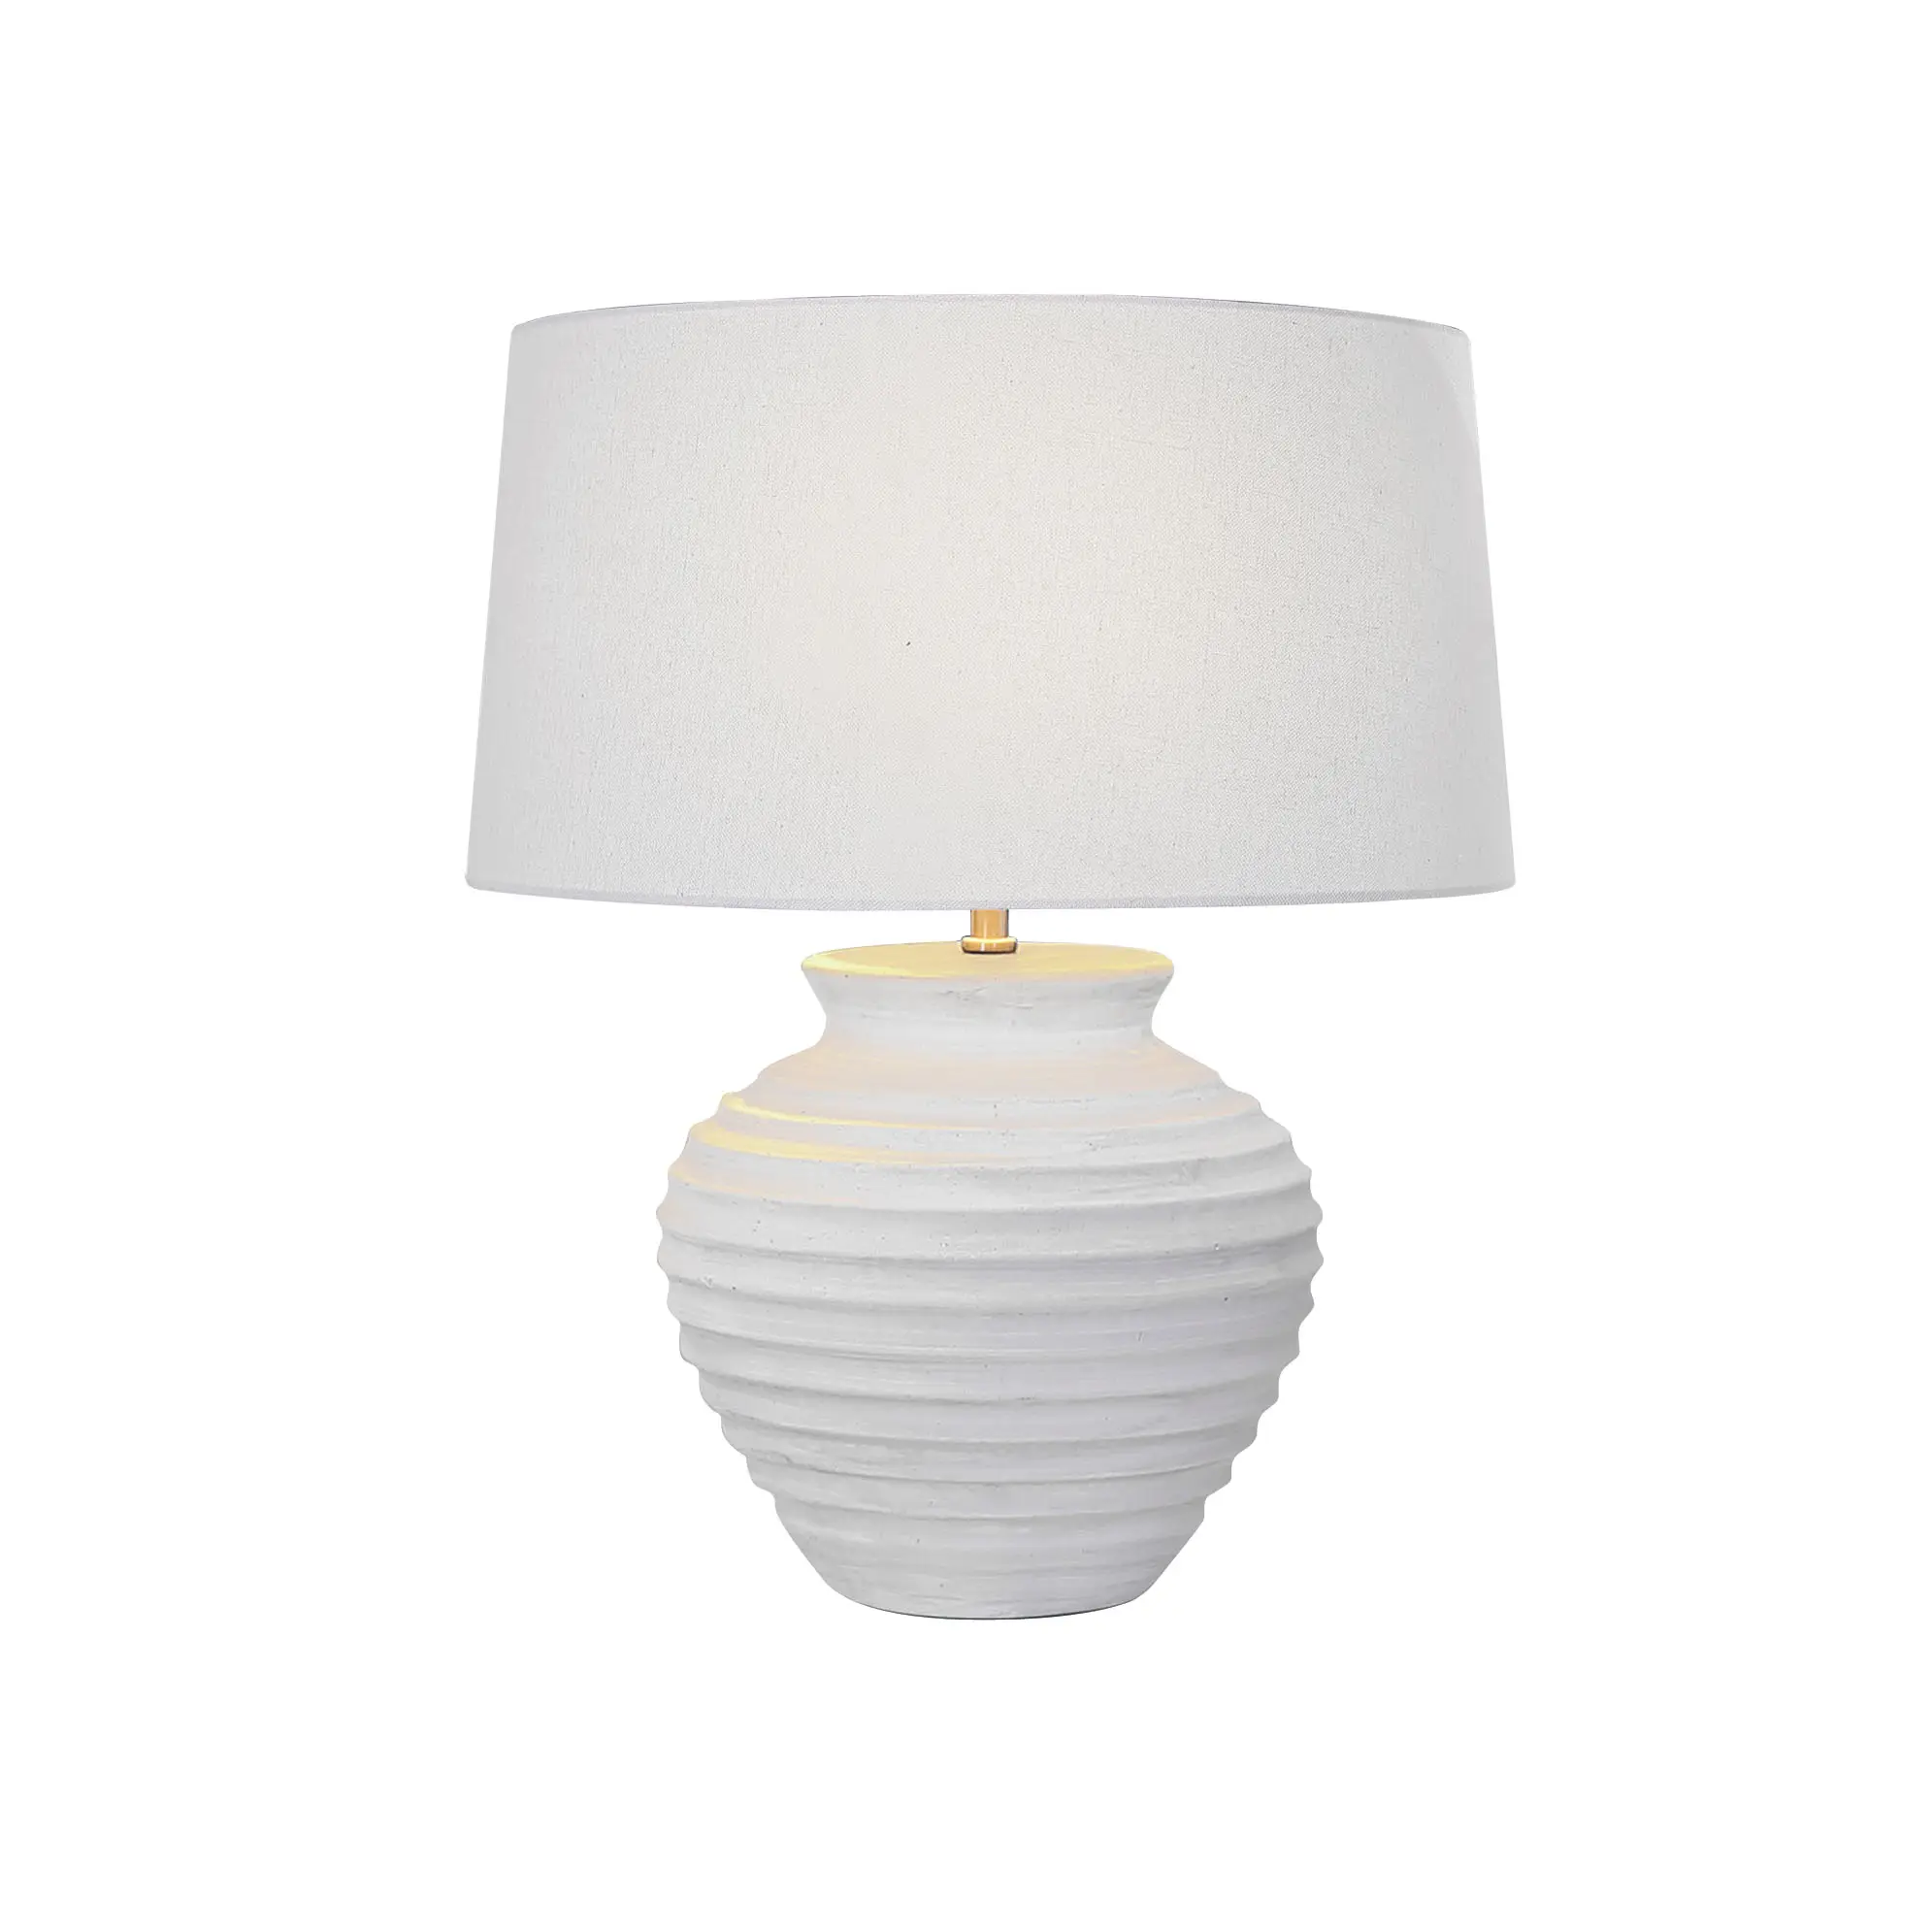 Jiahua-base & sombra Tecido lâmpada de Cerâmica de Alta qualidade Por Atacado E27-suporte da lâmpada de cerâmica lâmpada de mesa de luz